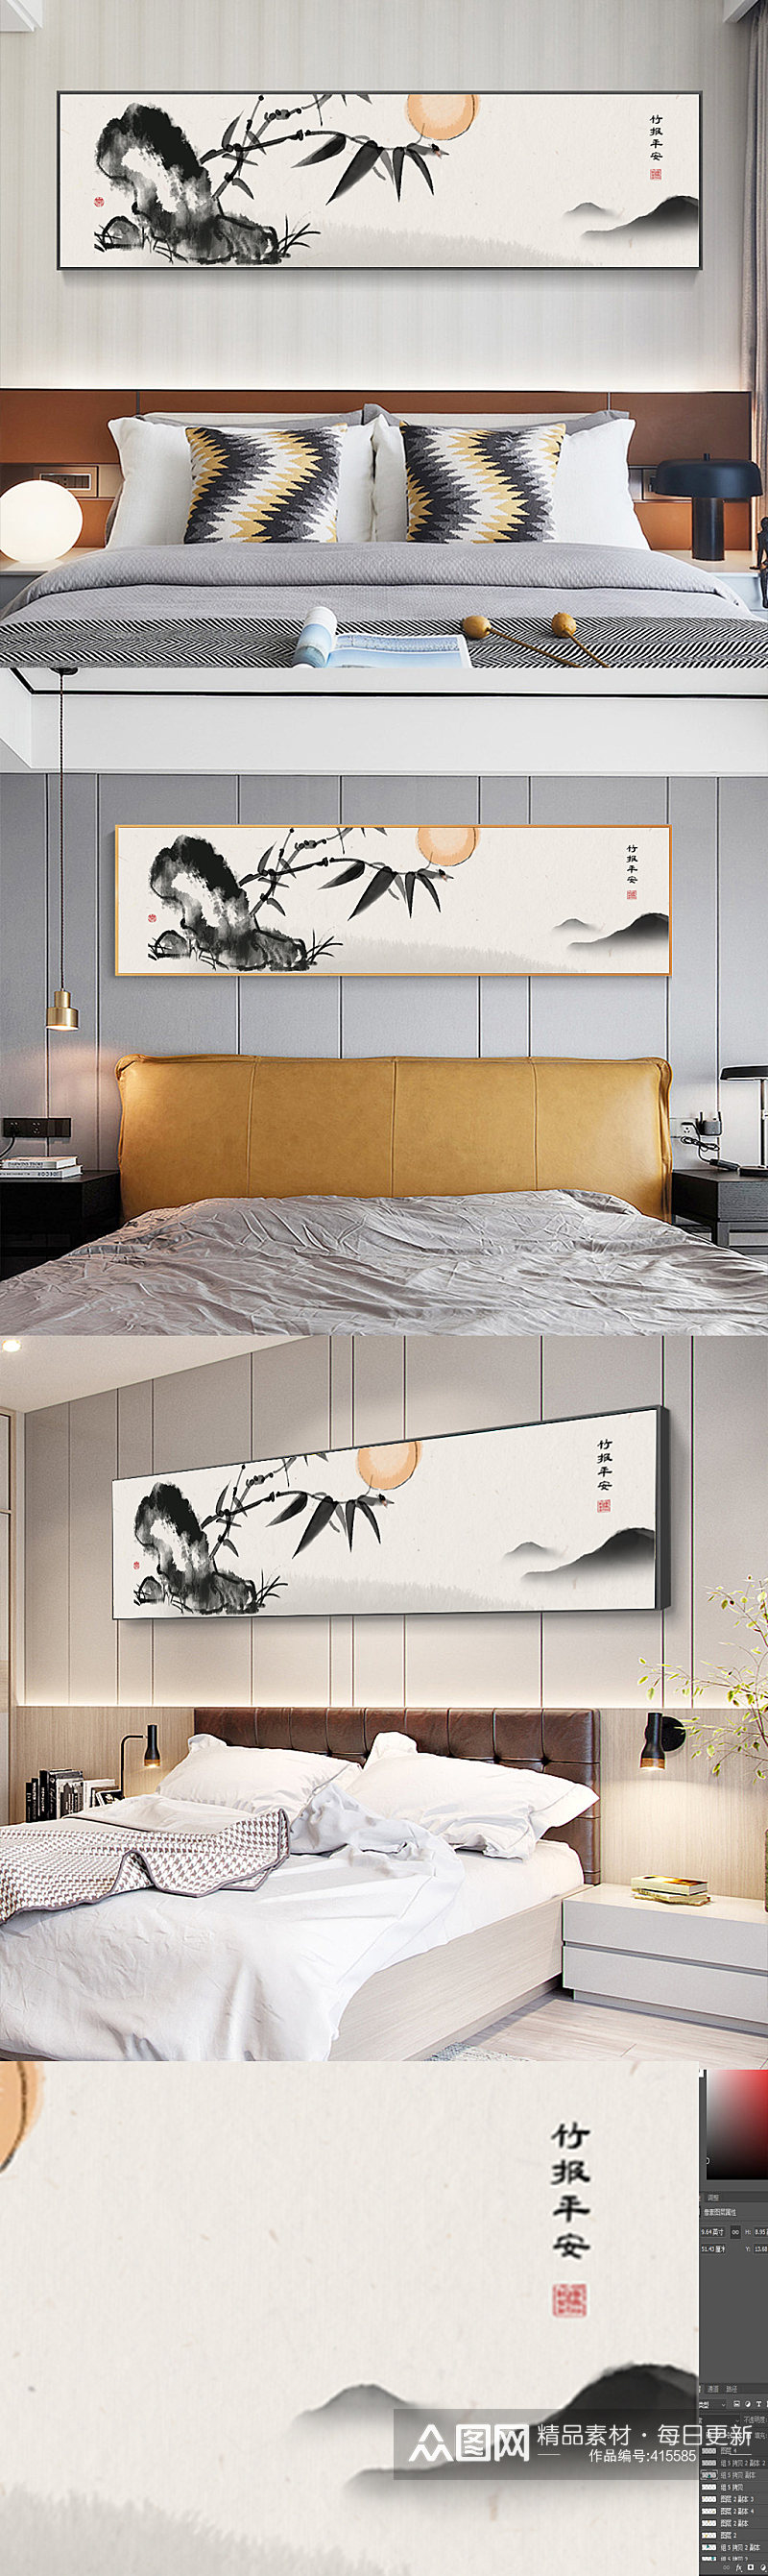 手绘水墨新中式床头装饰画素材